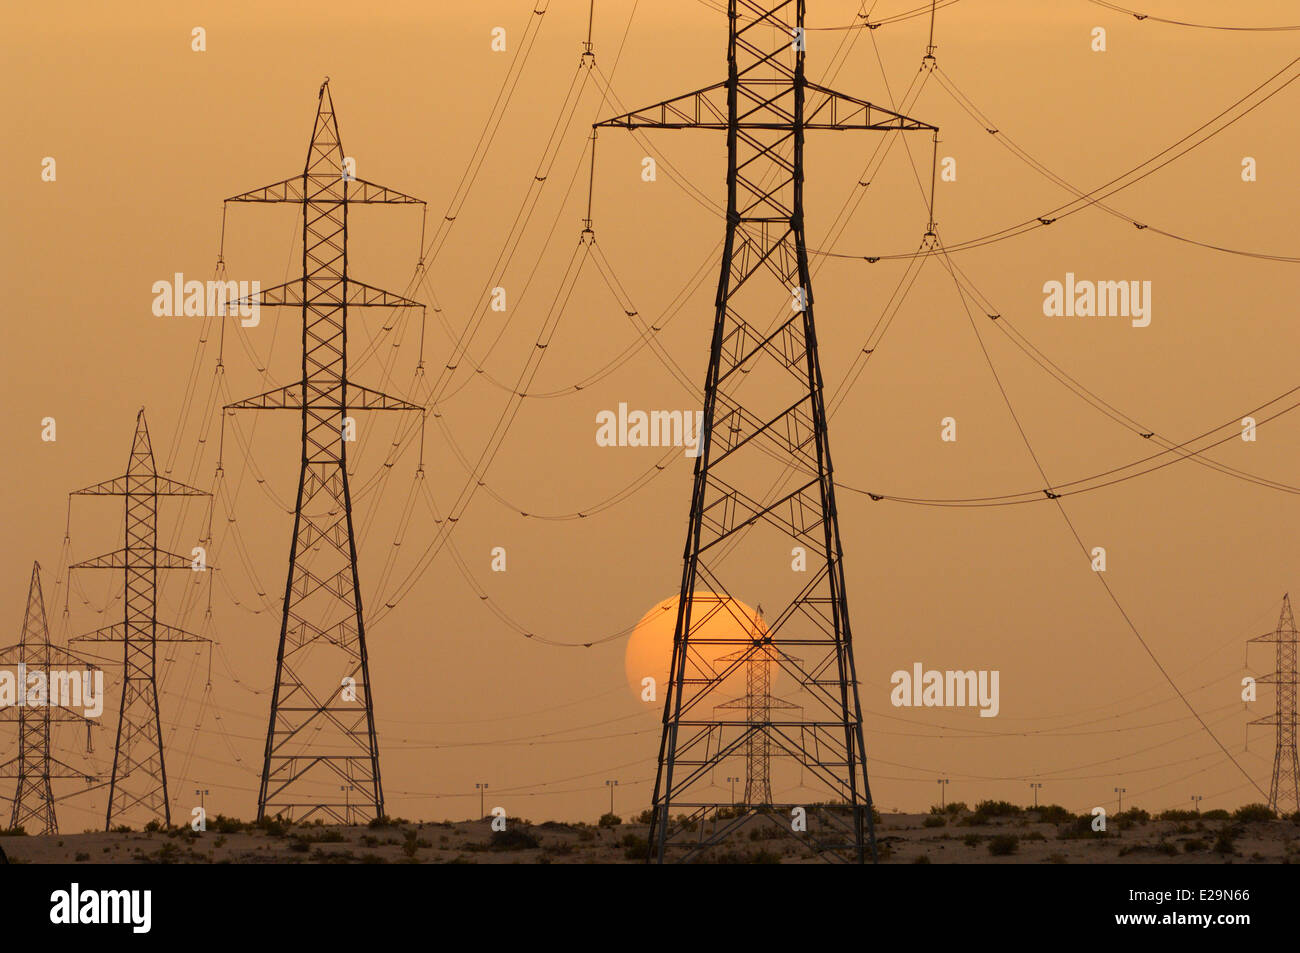 United Arab Emirates, Abu Dhabi emirate, Abu Dhabi, high voltage power lines at sunset Stock Photo